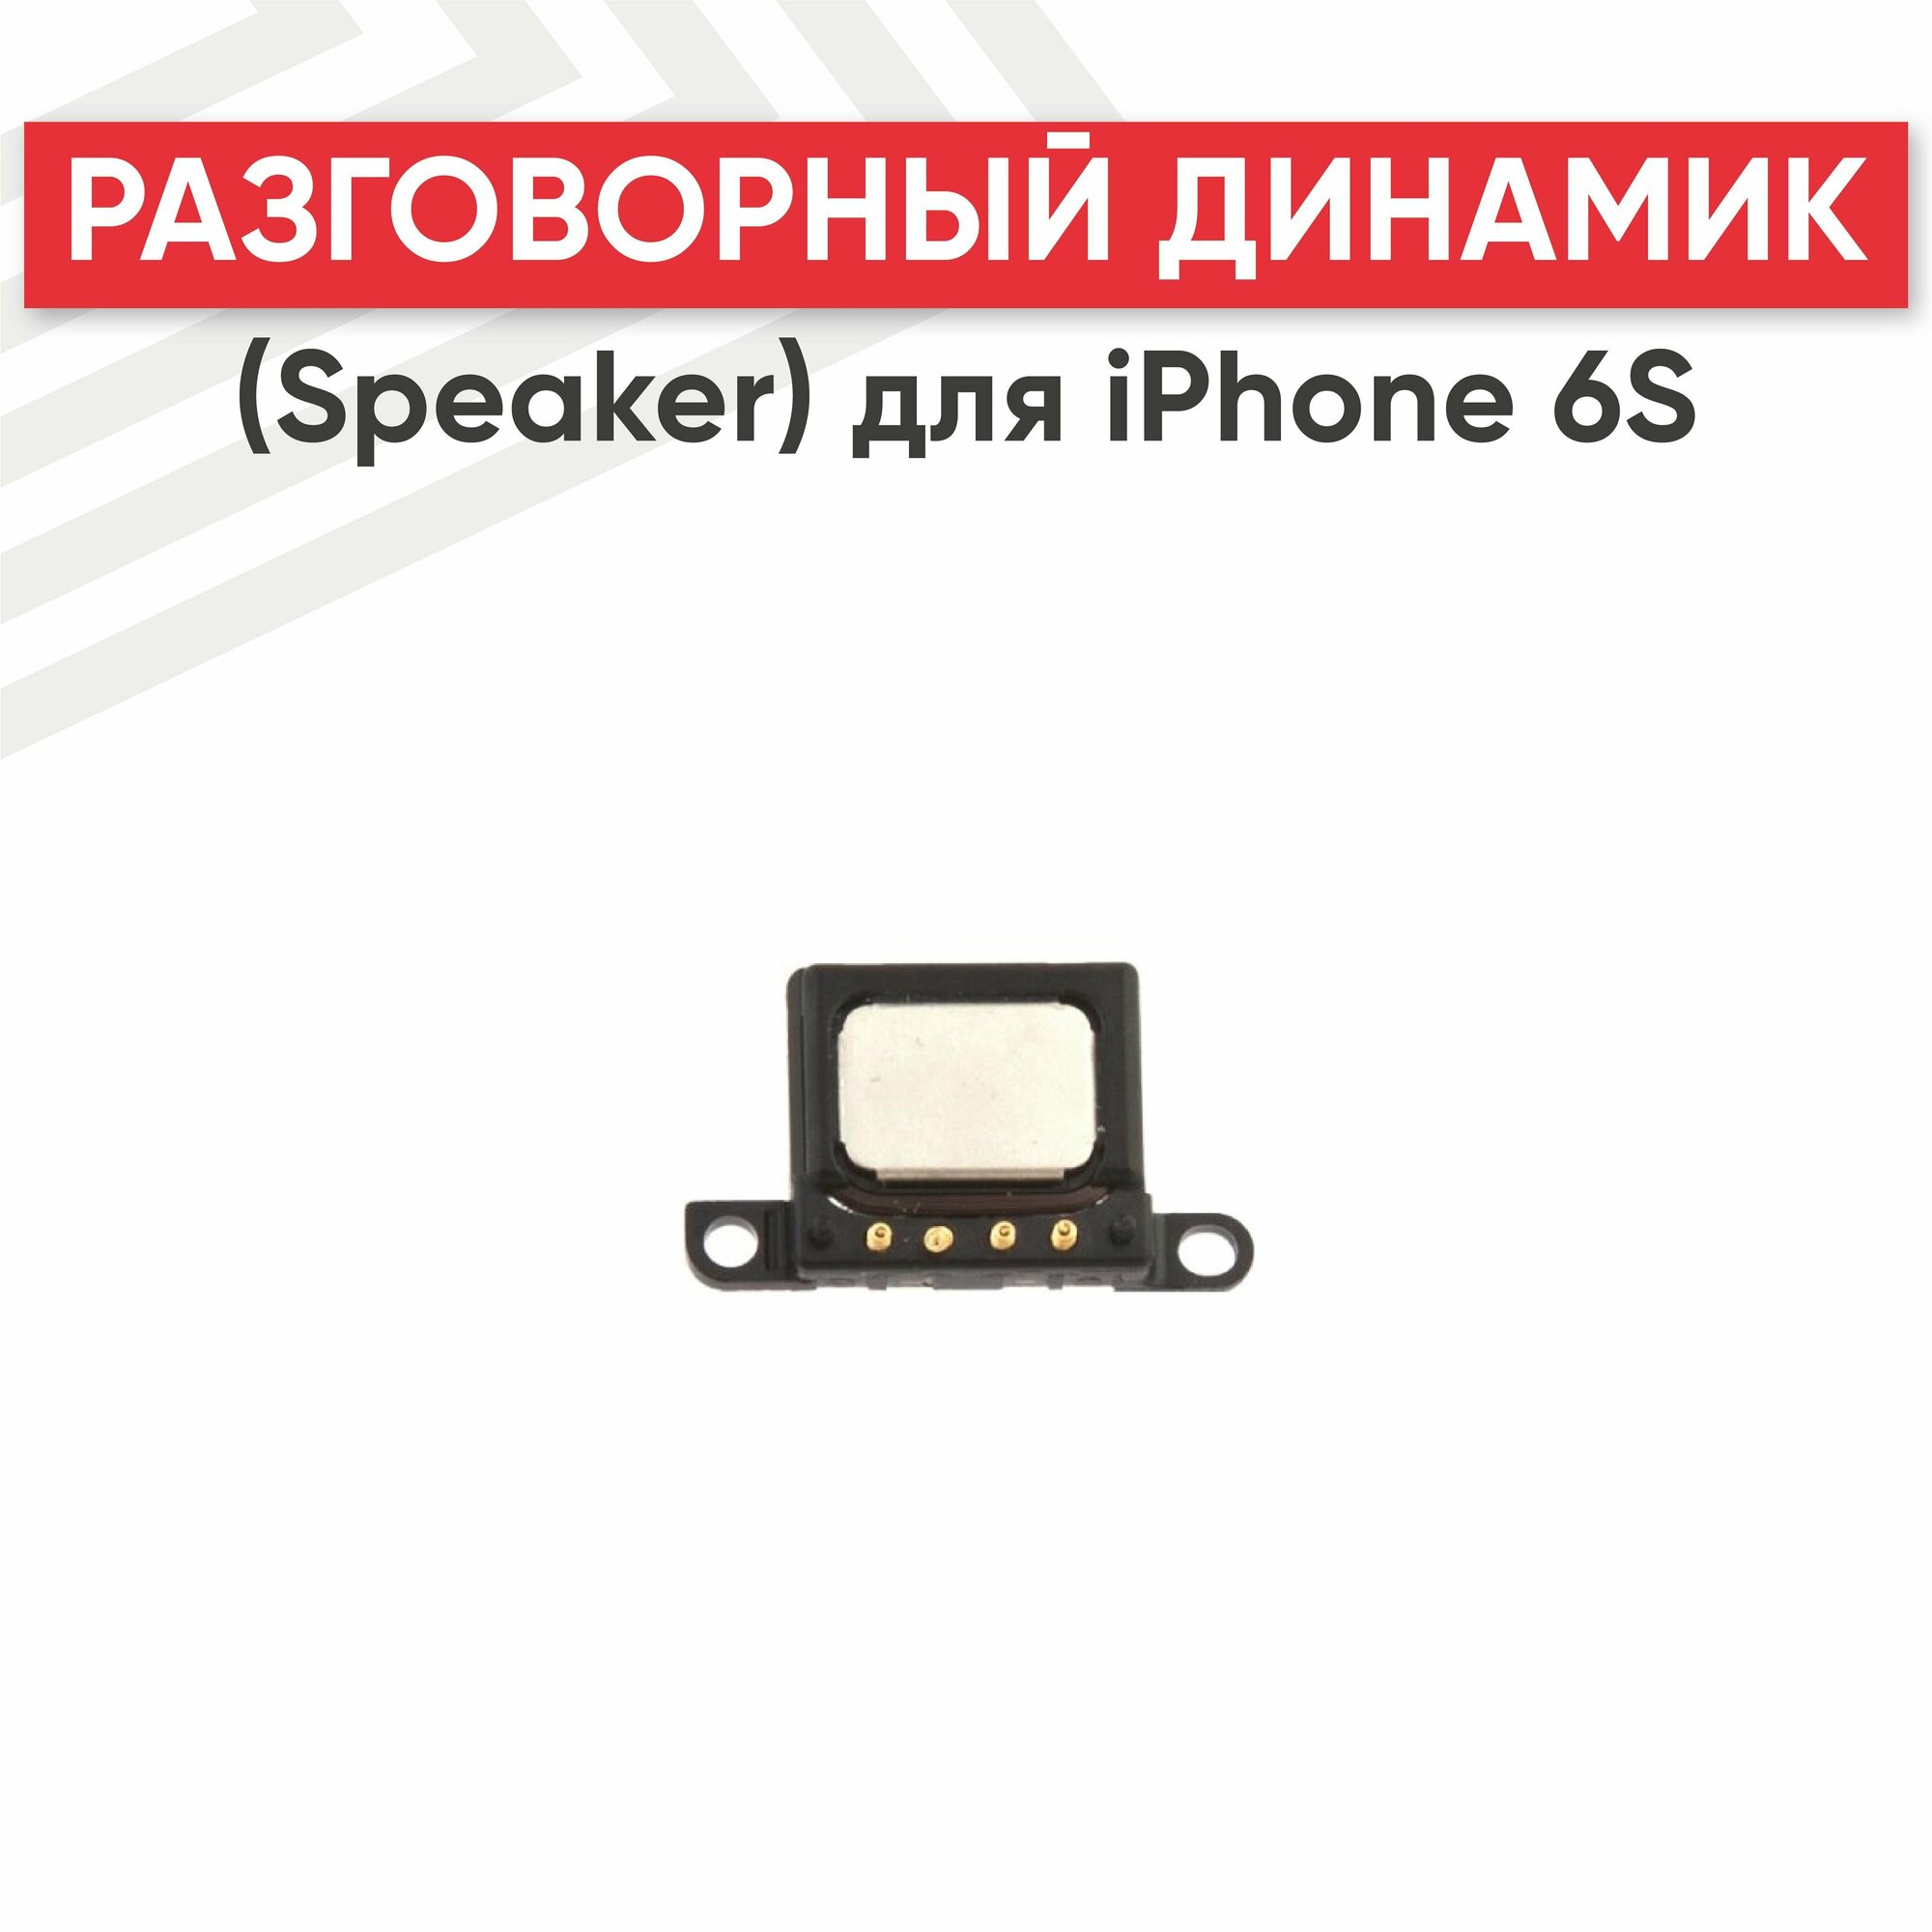 Разговорный динамик (Speaker) RageX для iPhone 6S